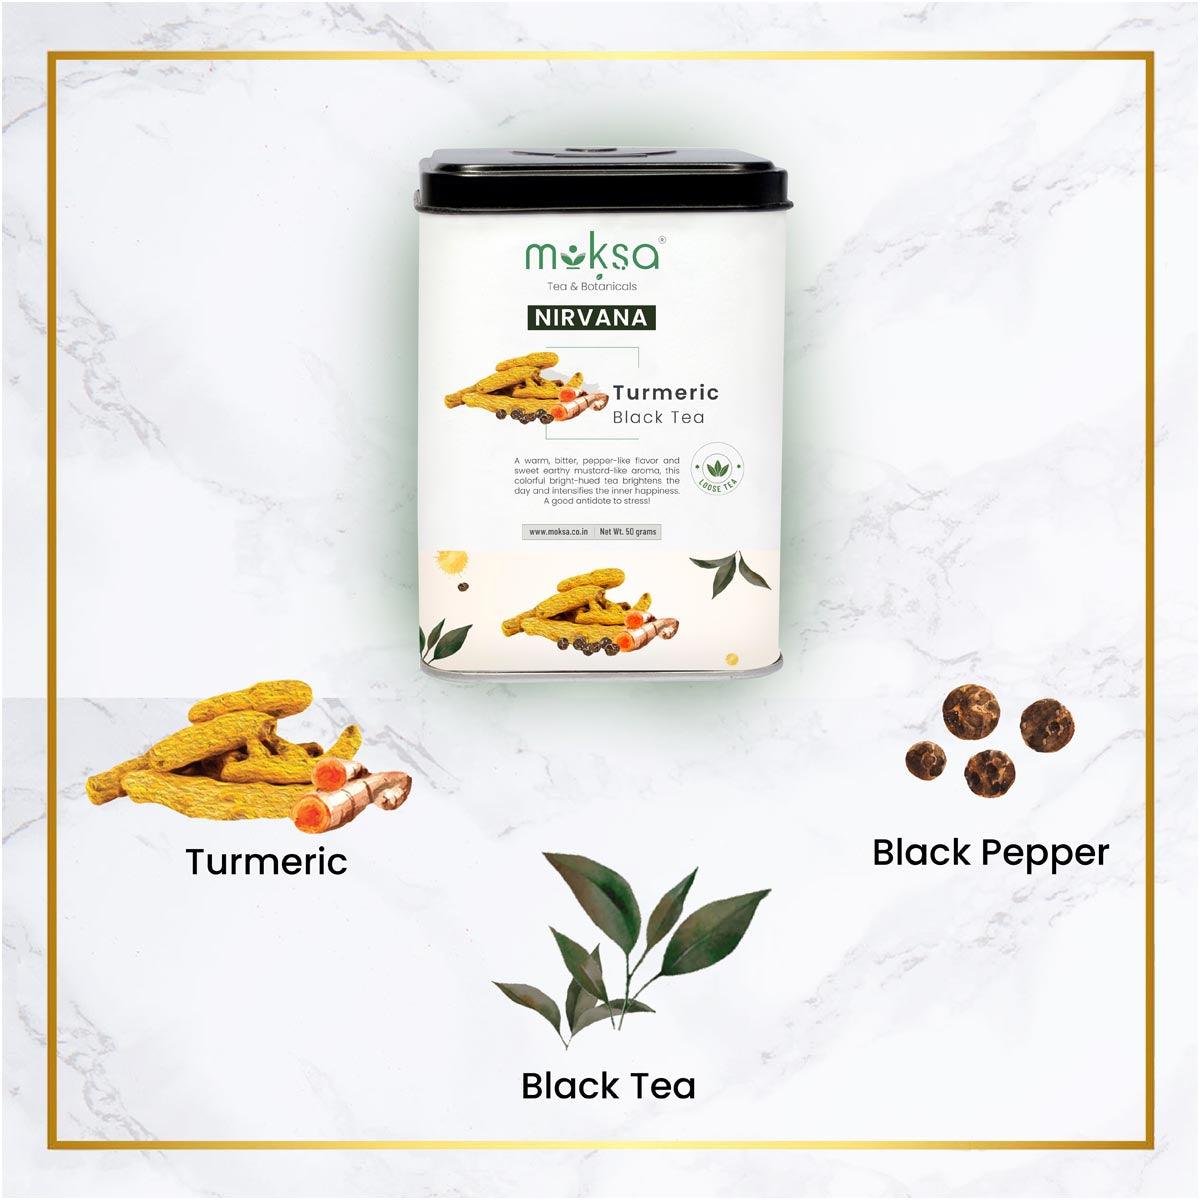 Turmeric Black Tea Ingredients